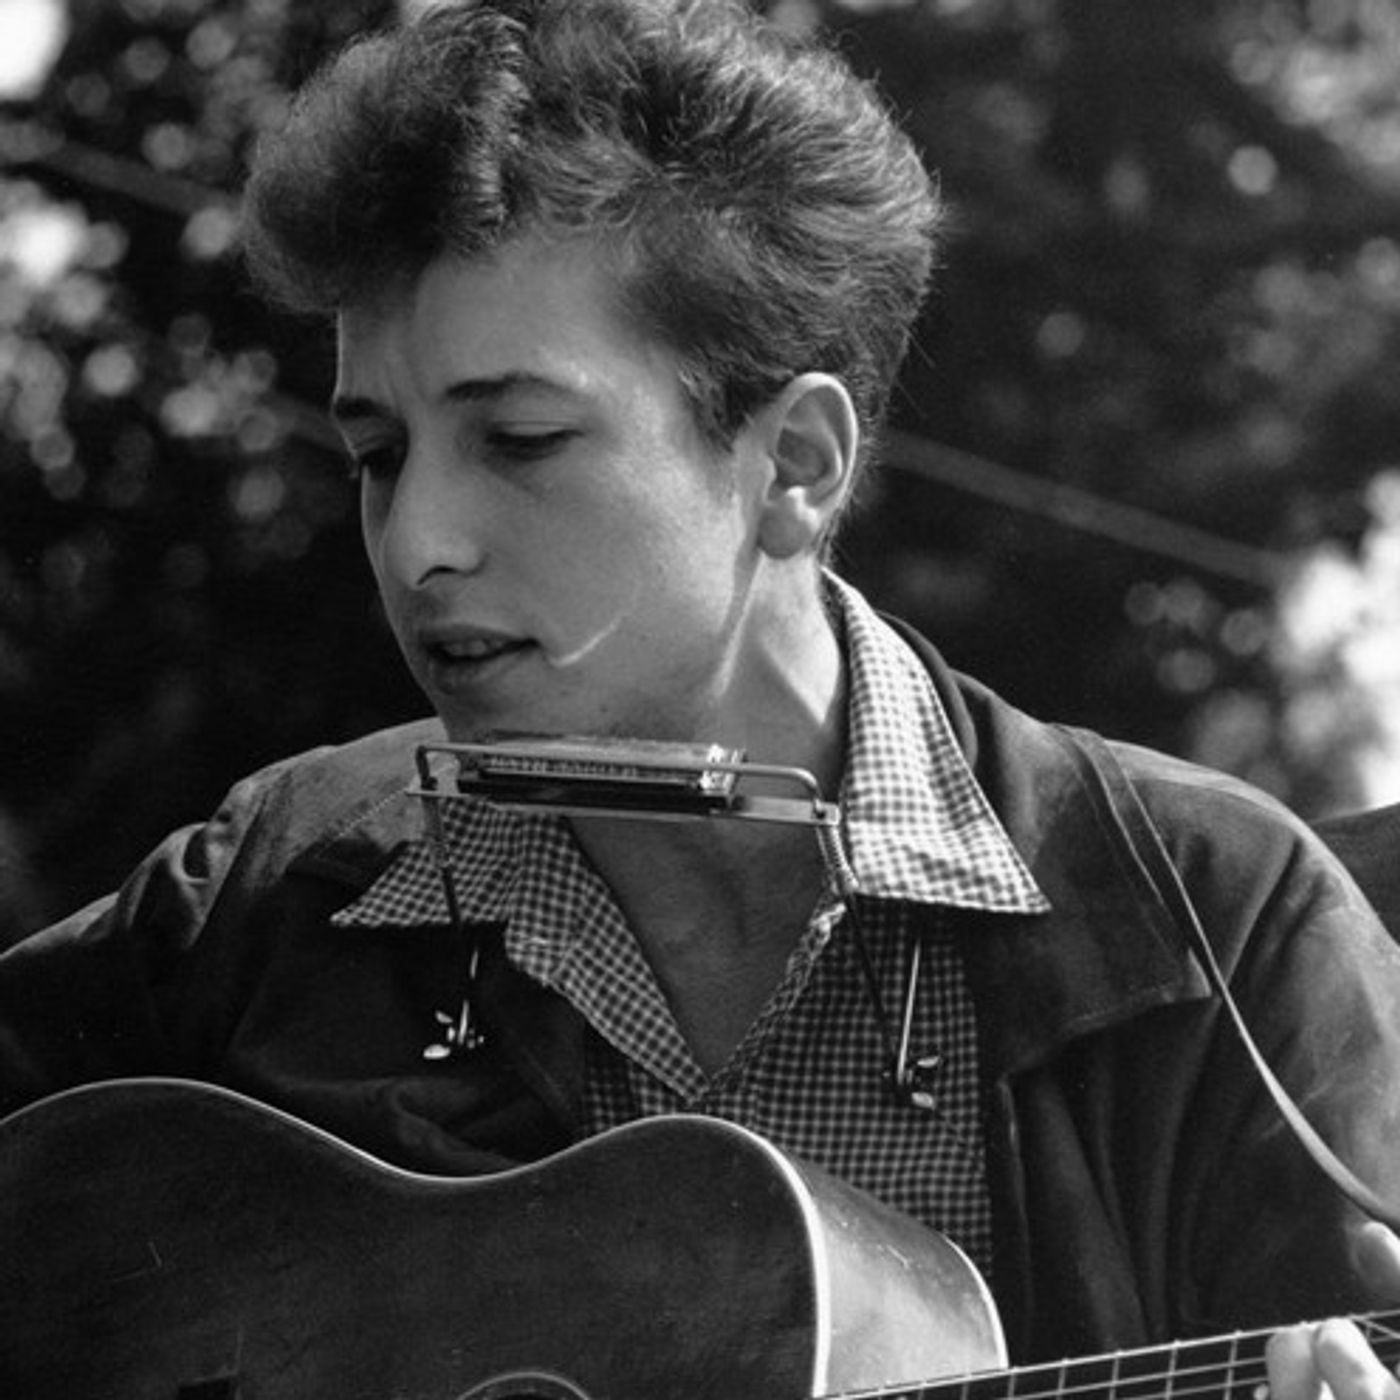 Bob Dylan. "A Hard Rain’s A‐Gonna Fall", la sua ballata folk costruita su una serie di domande e risposte che racconta i dolori dell'umanità